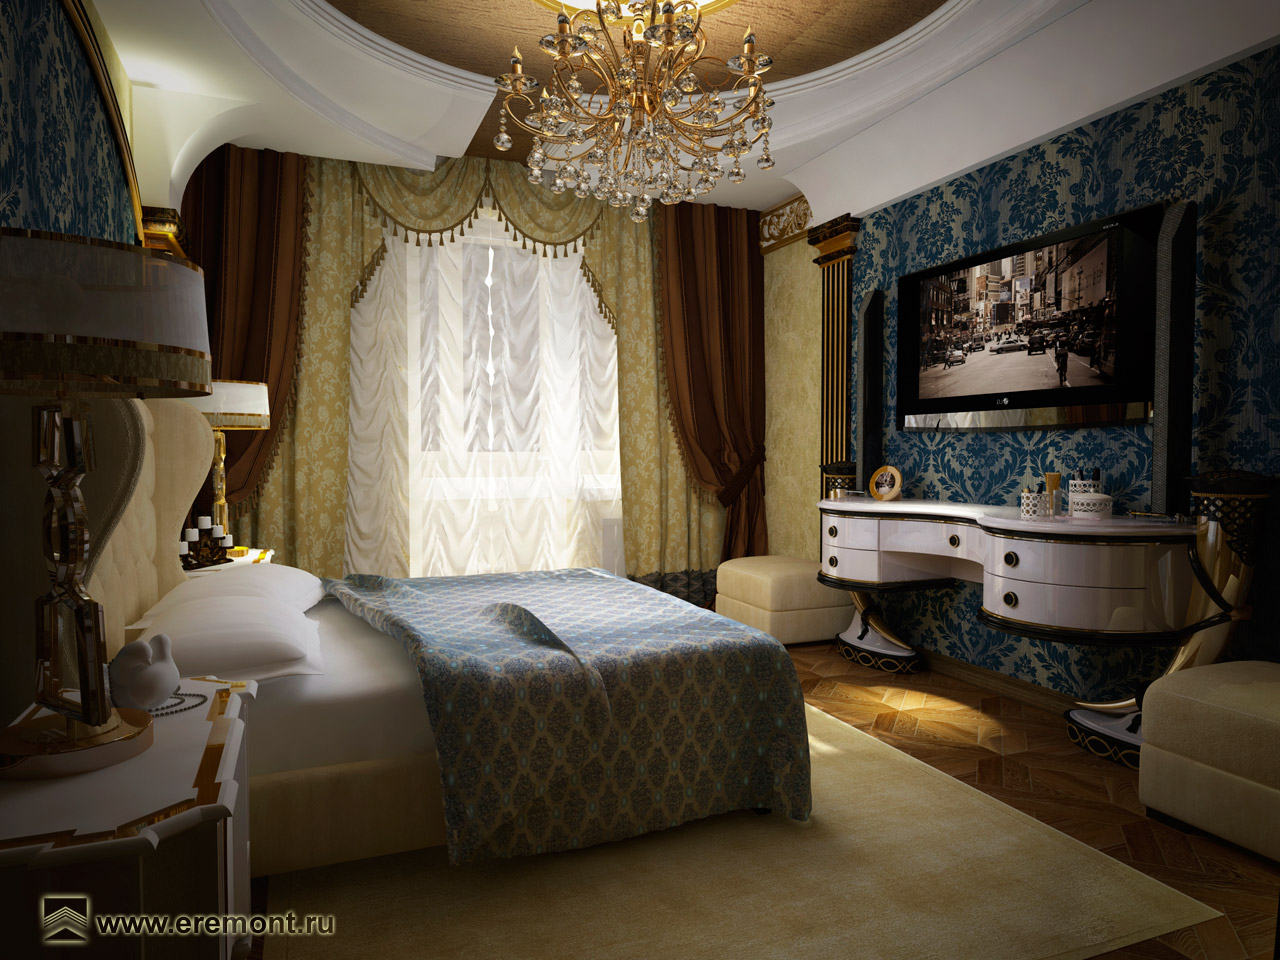 Богато обставленная спальня в классическом стиле